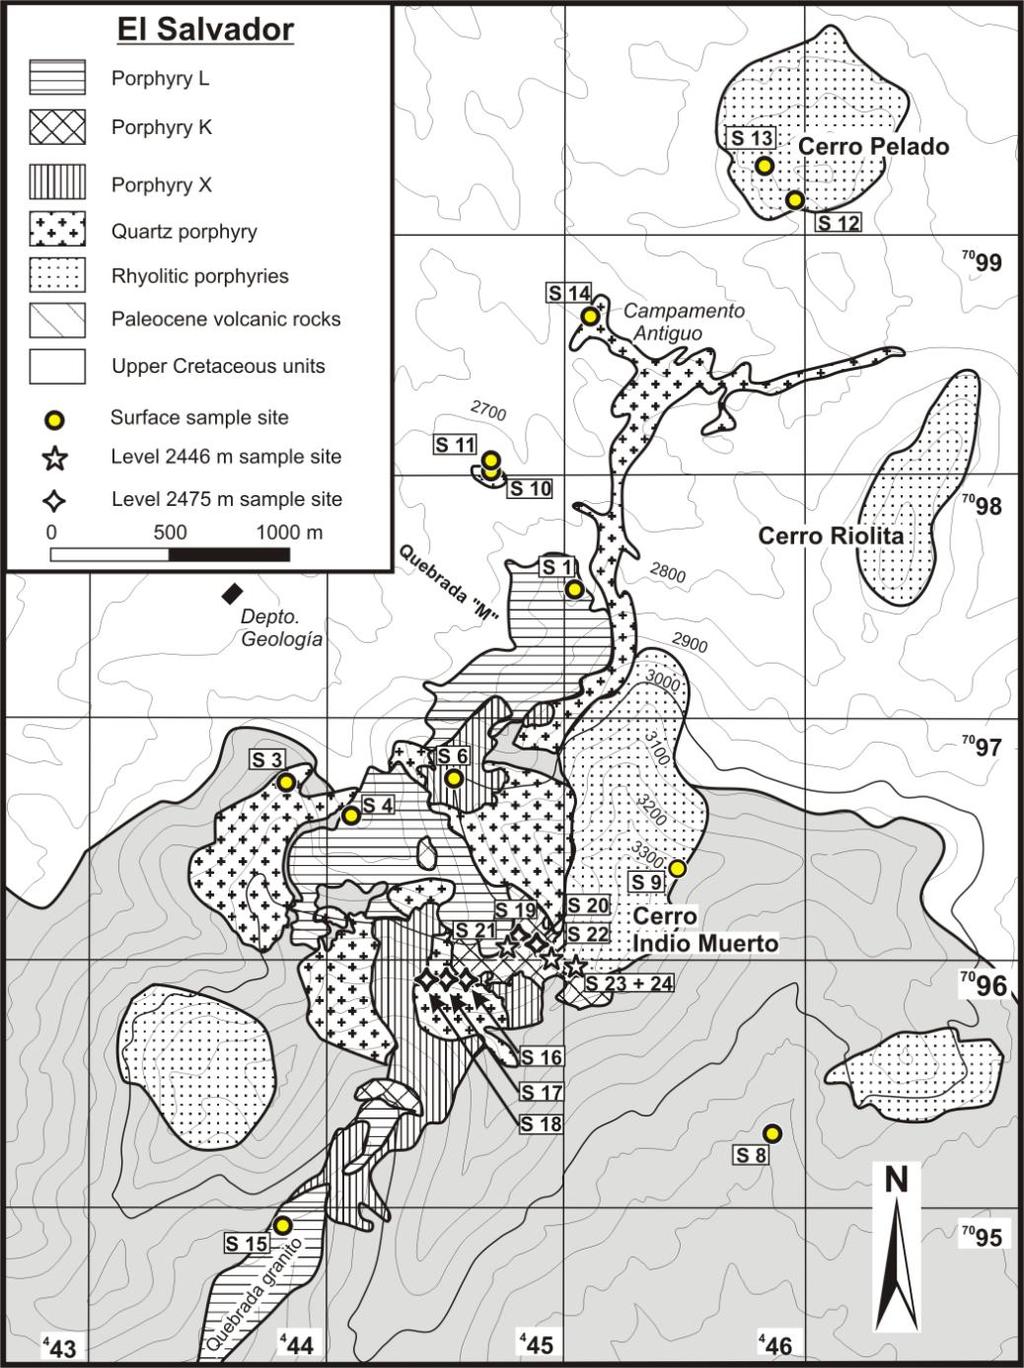 48 Abb. 2.23: Geologische Karte der copper porphyry-lagerstätte El Salvador.